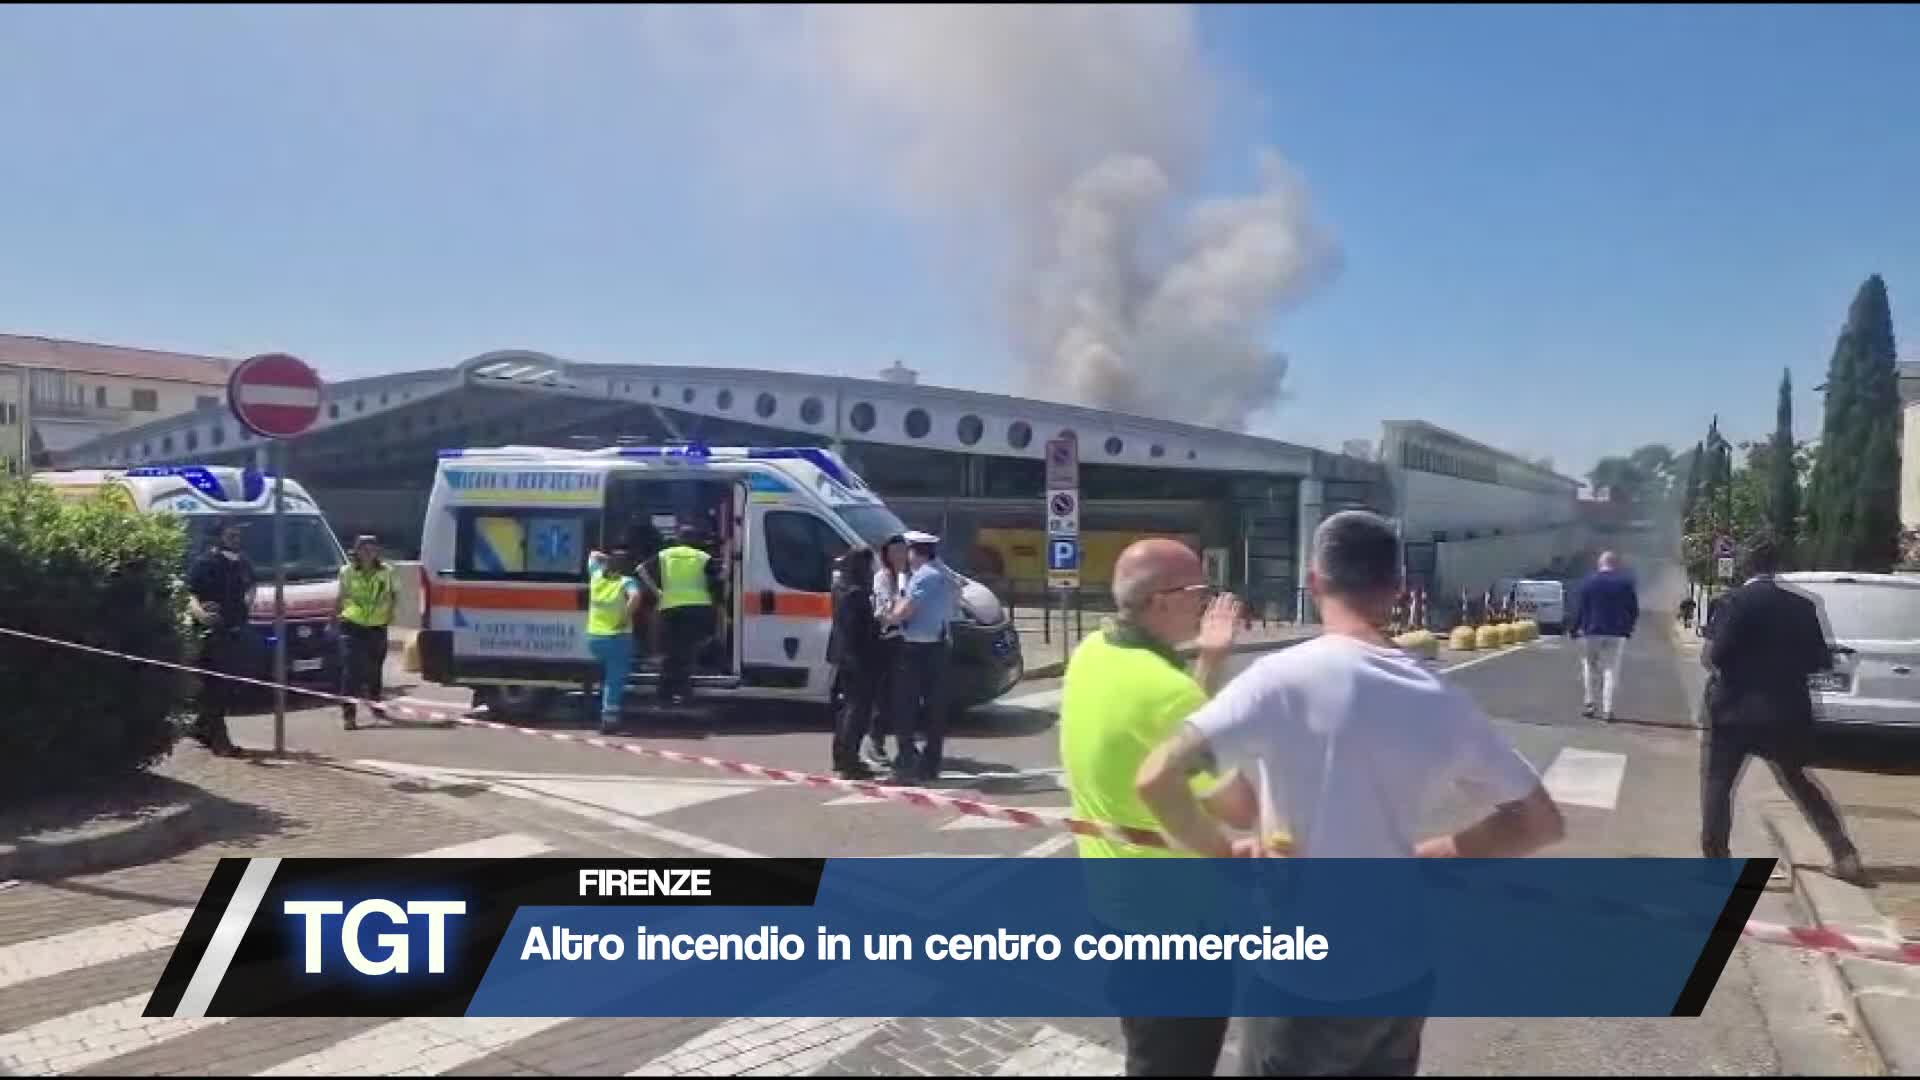 Firenze - Altro incendio ad un centro commerciale Thumbnail